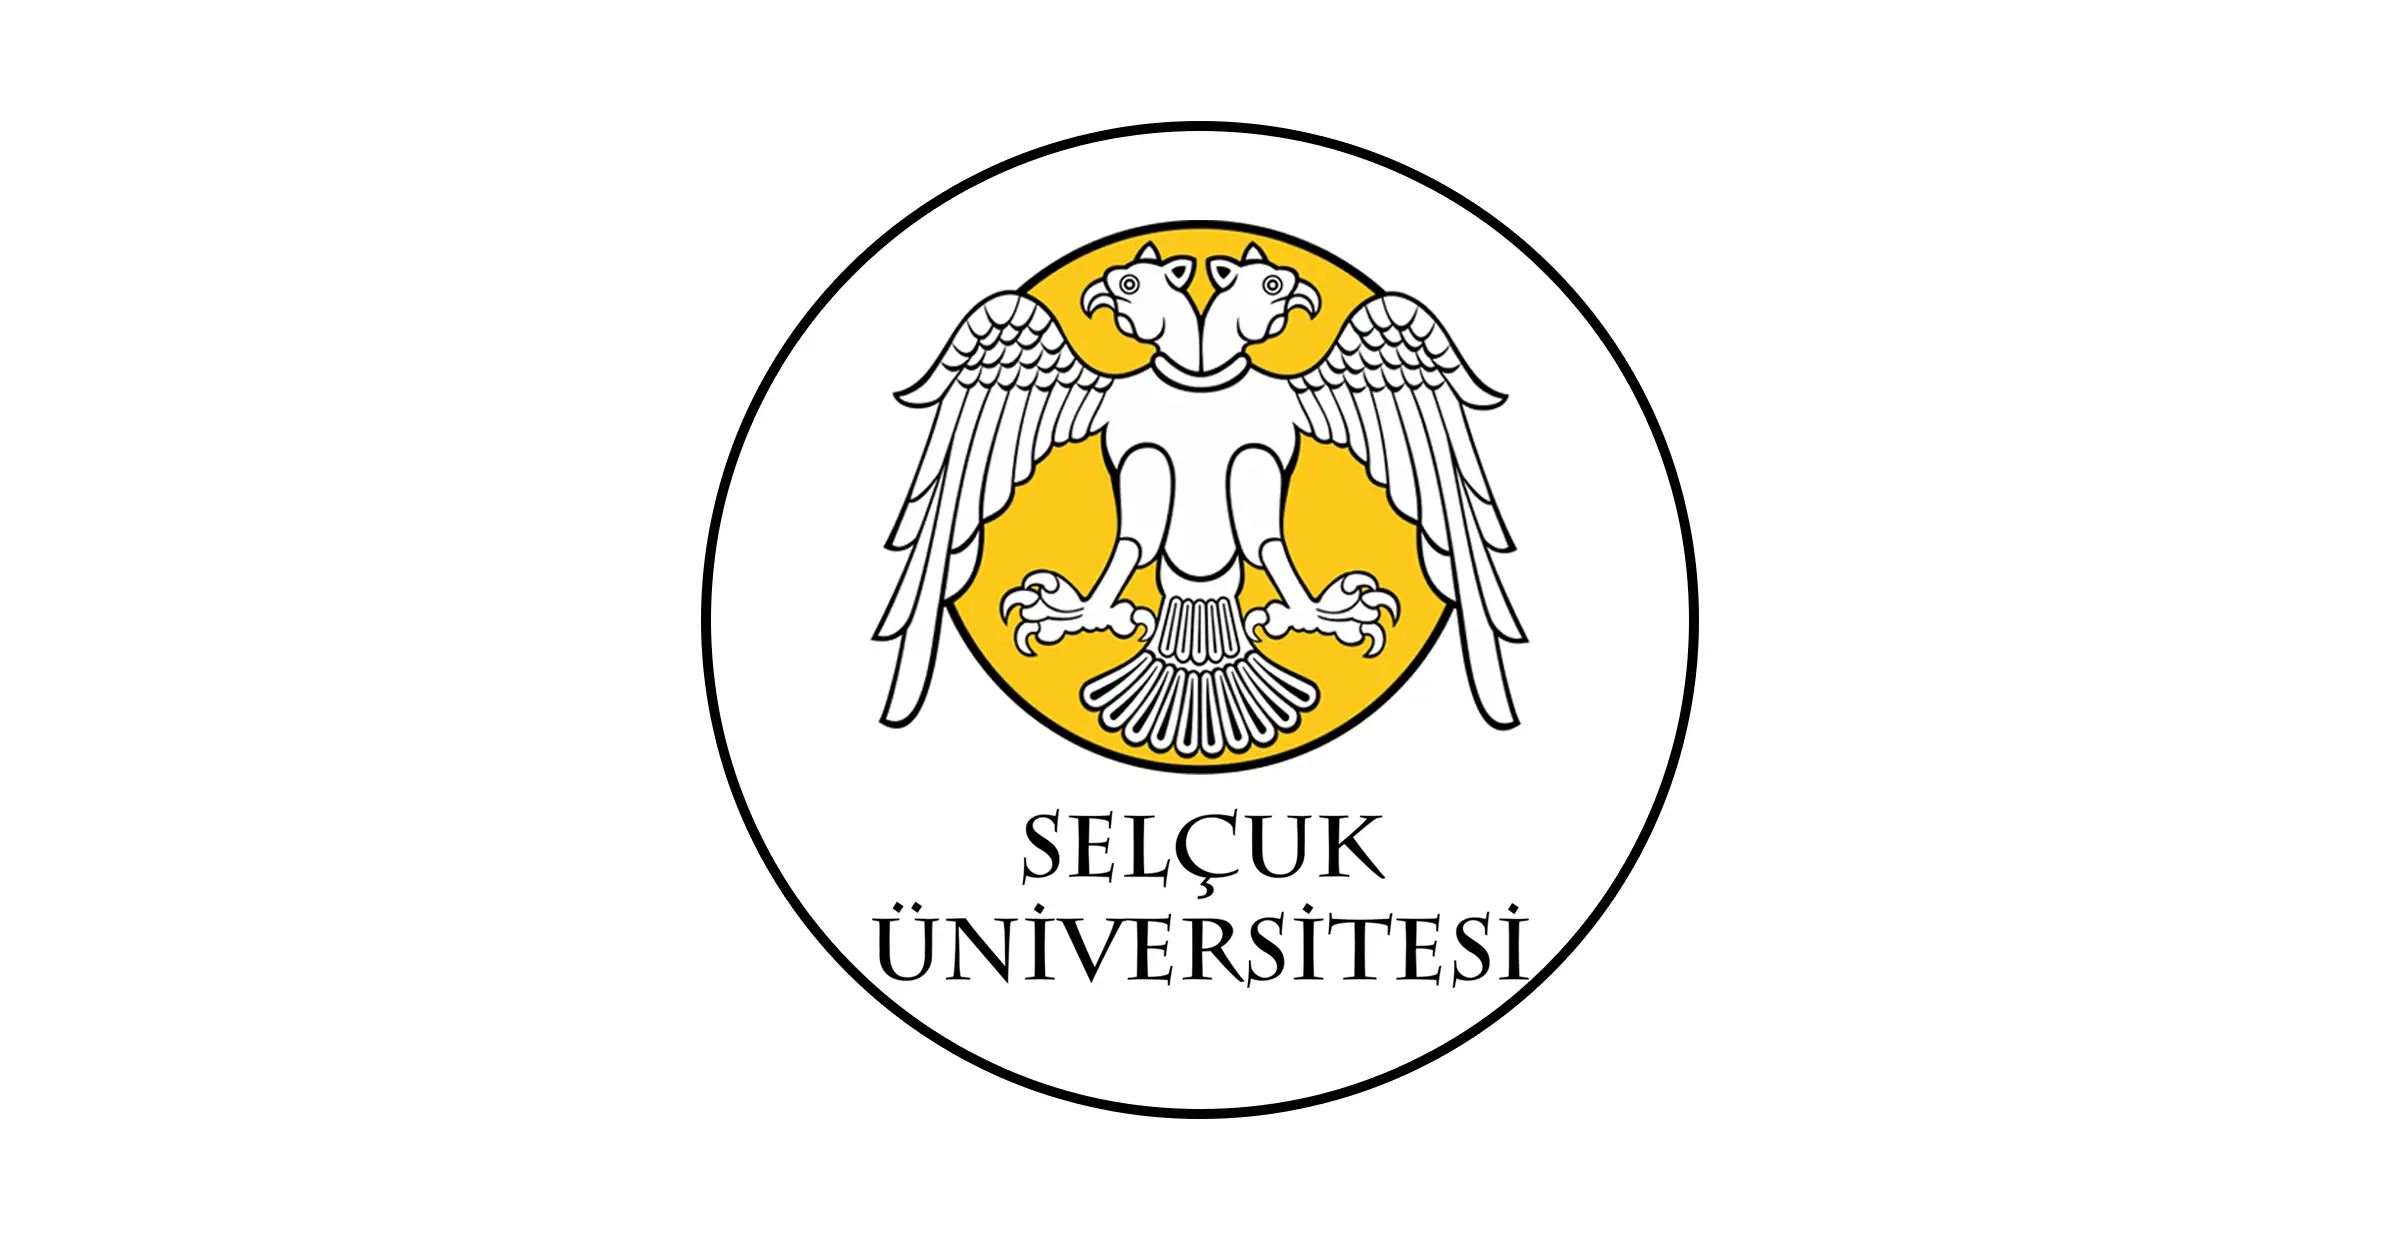 تأسست جامعة سلجوق Selçuk Üniversitesi عام 1975 في مدينة قونيا التي تعتبر أكبر مدينة في تركيا. وتمتلك حالياً من 23 كلية و 22 معهد